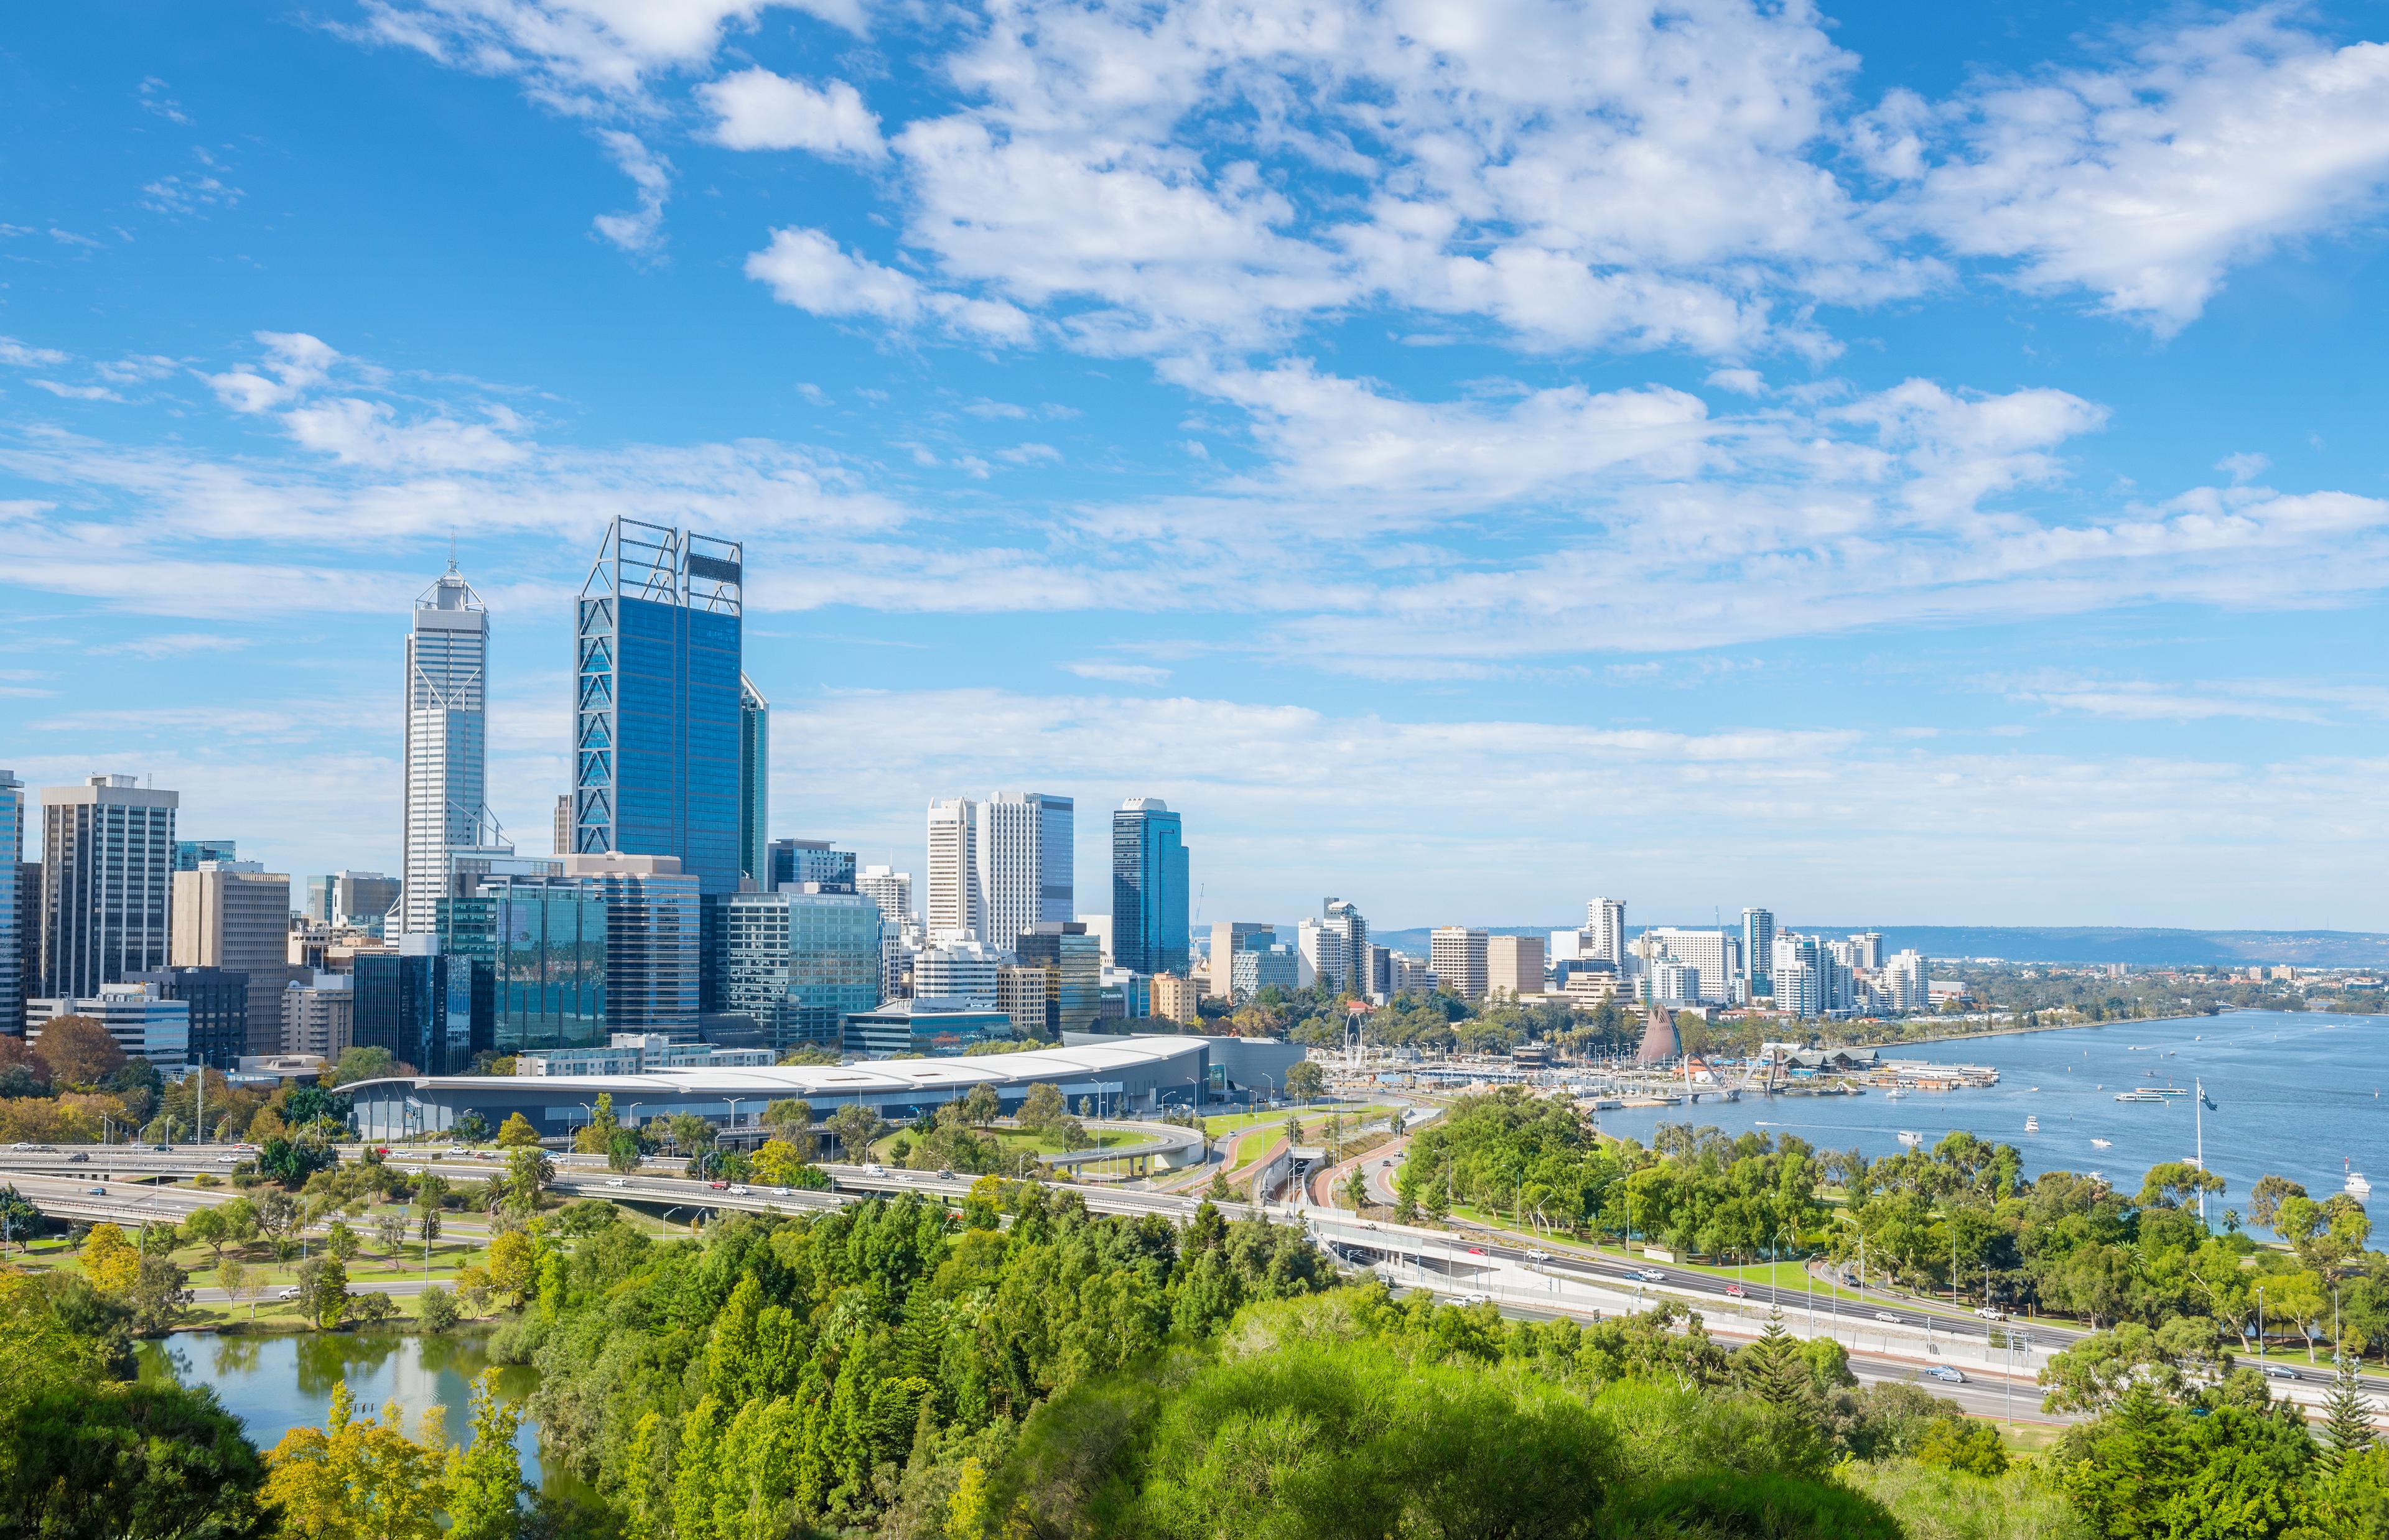 The Perth city, cover photo